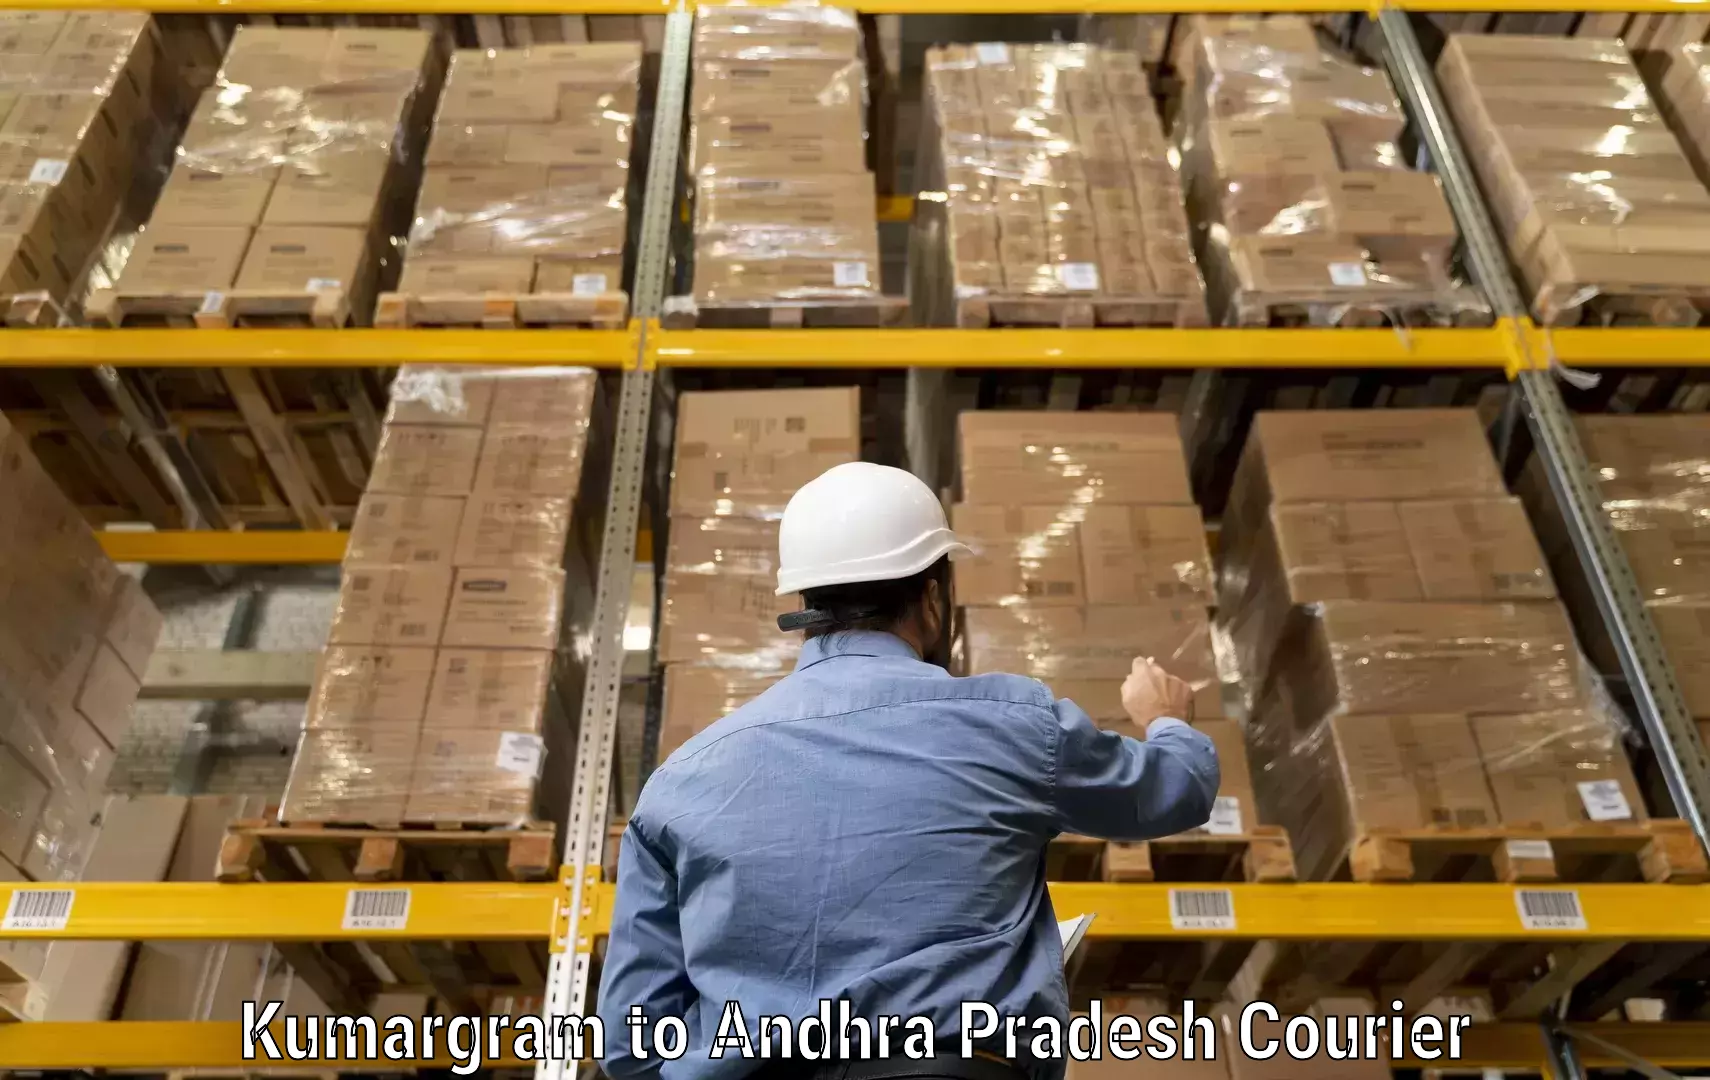 Quality courier partnerships Kumargram to Pakala